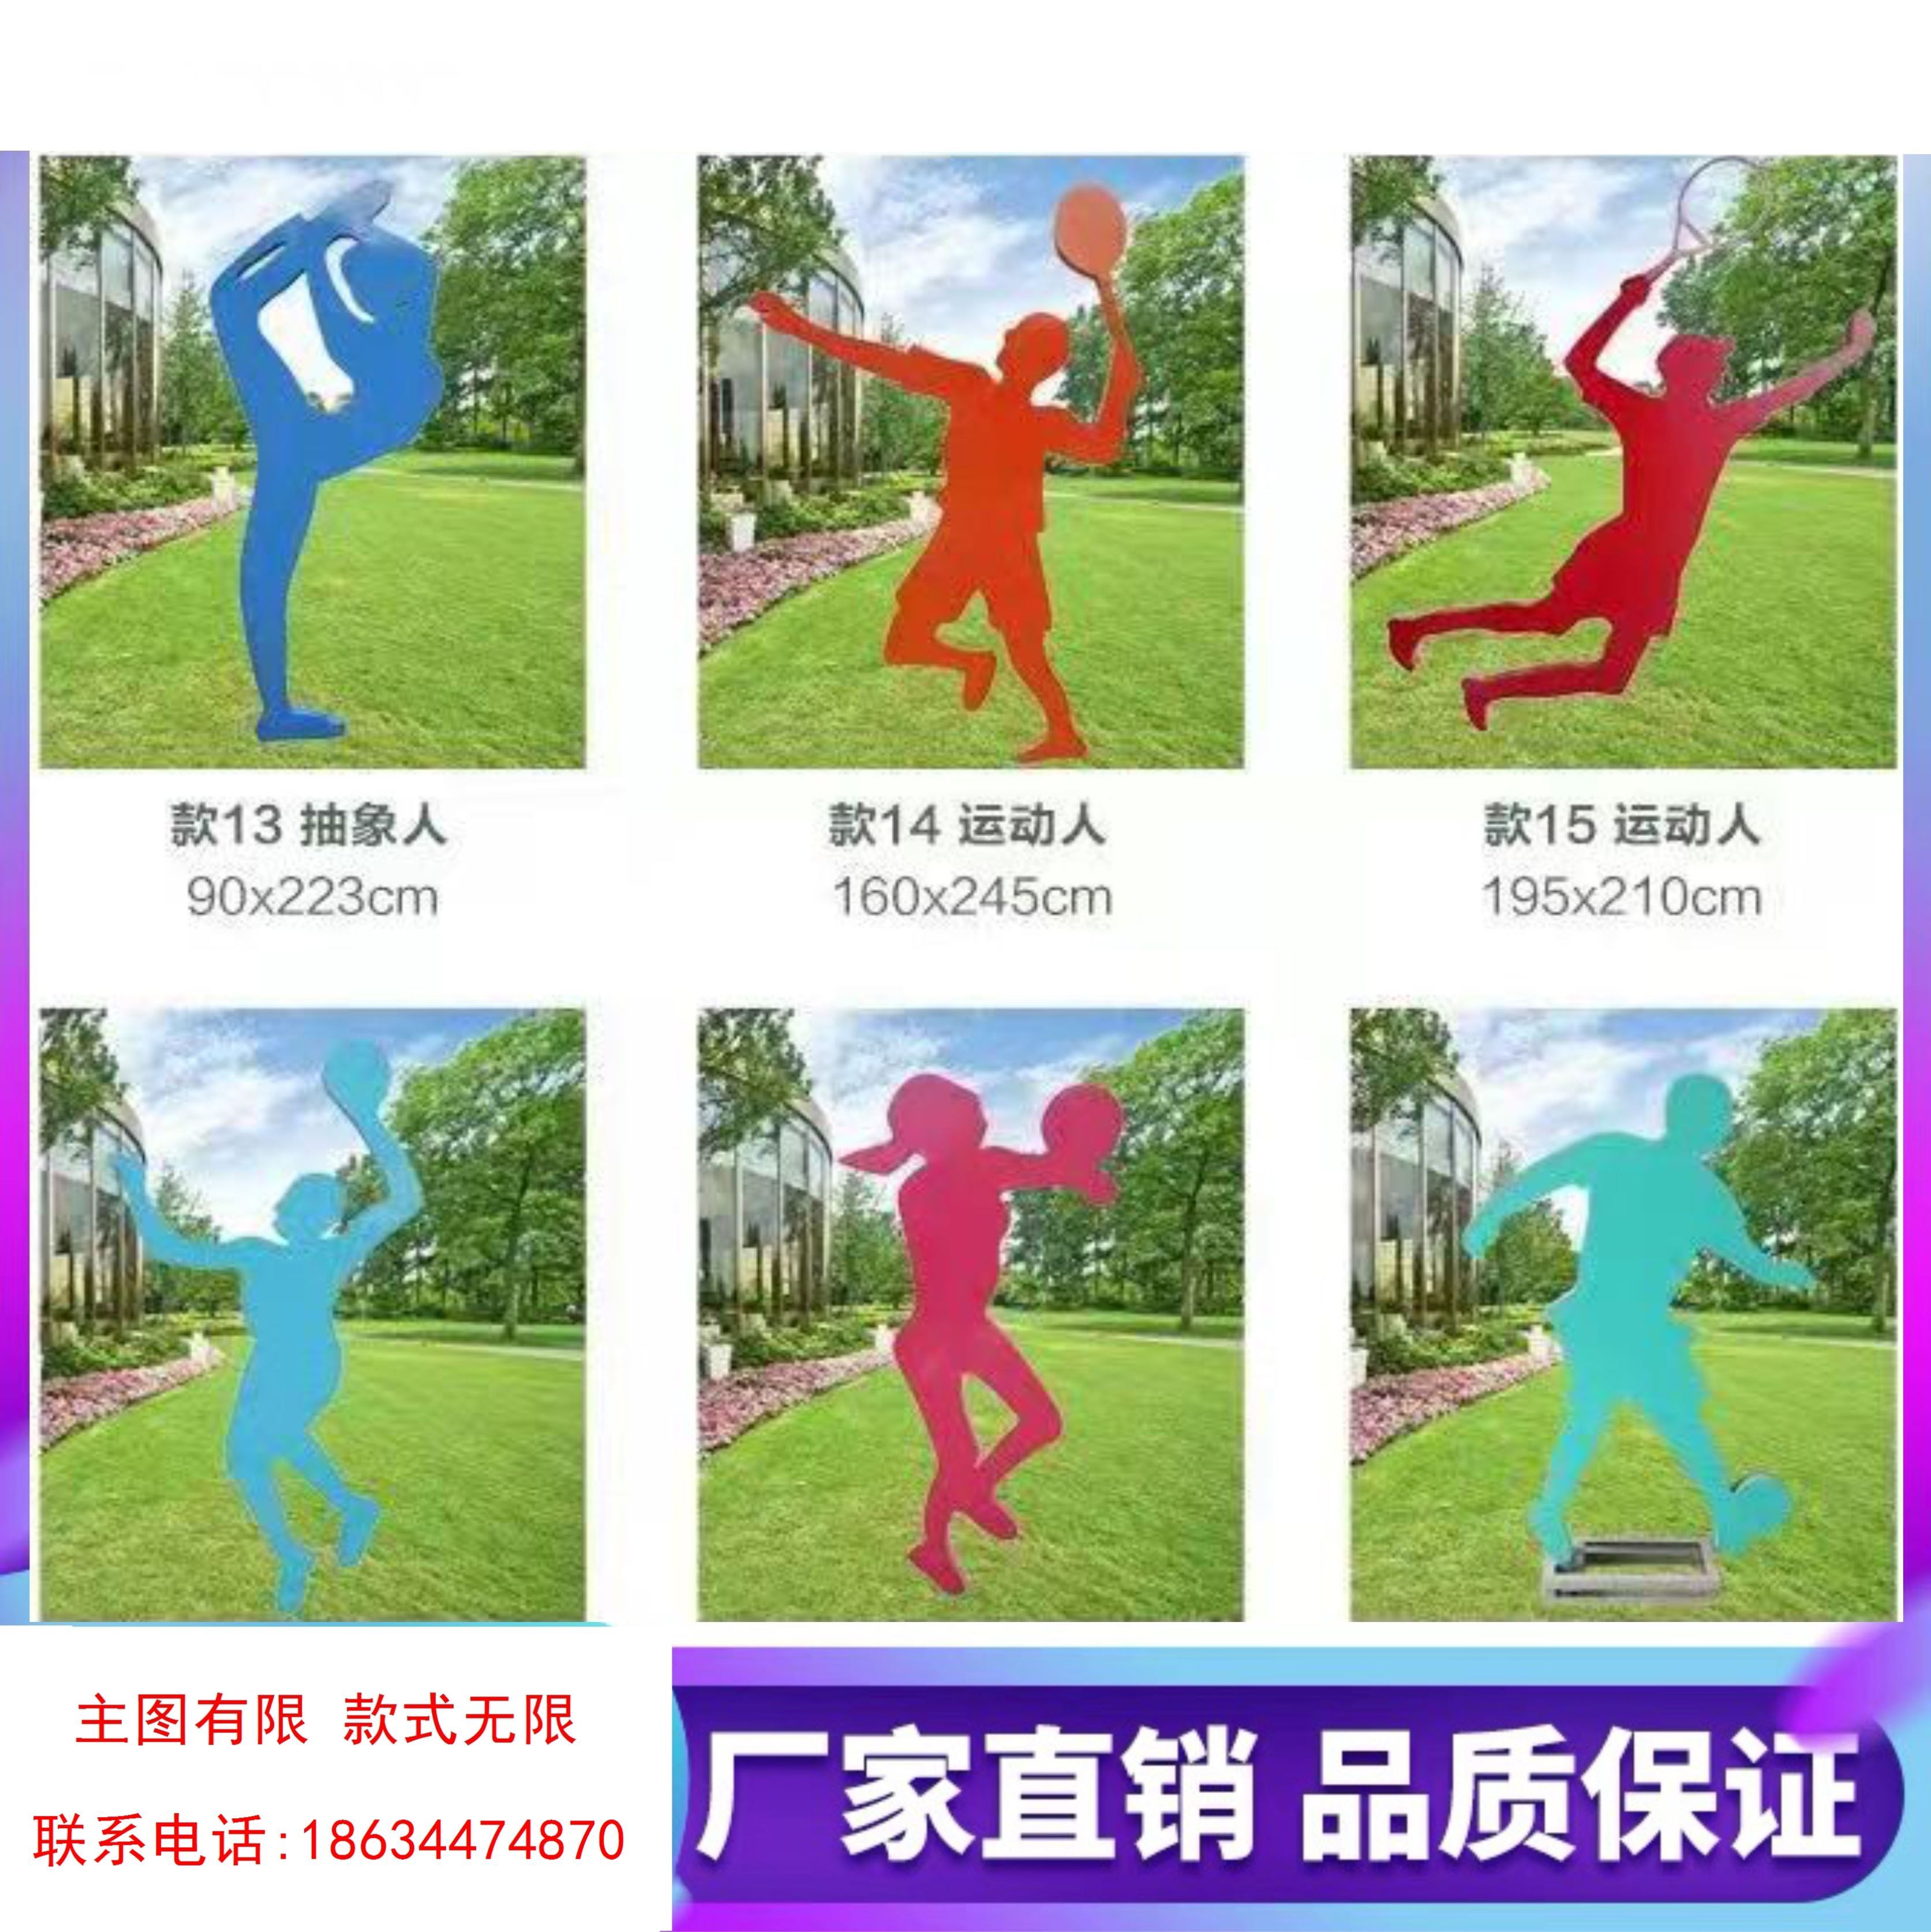 。人物运动造型体育铁艺雕塑大广场校园景观健康主题公园步道标识